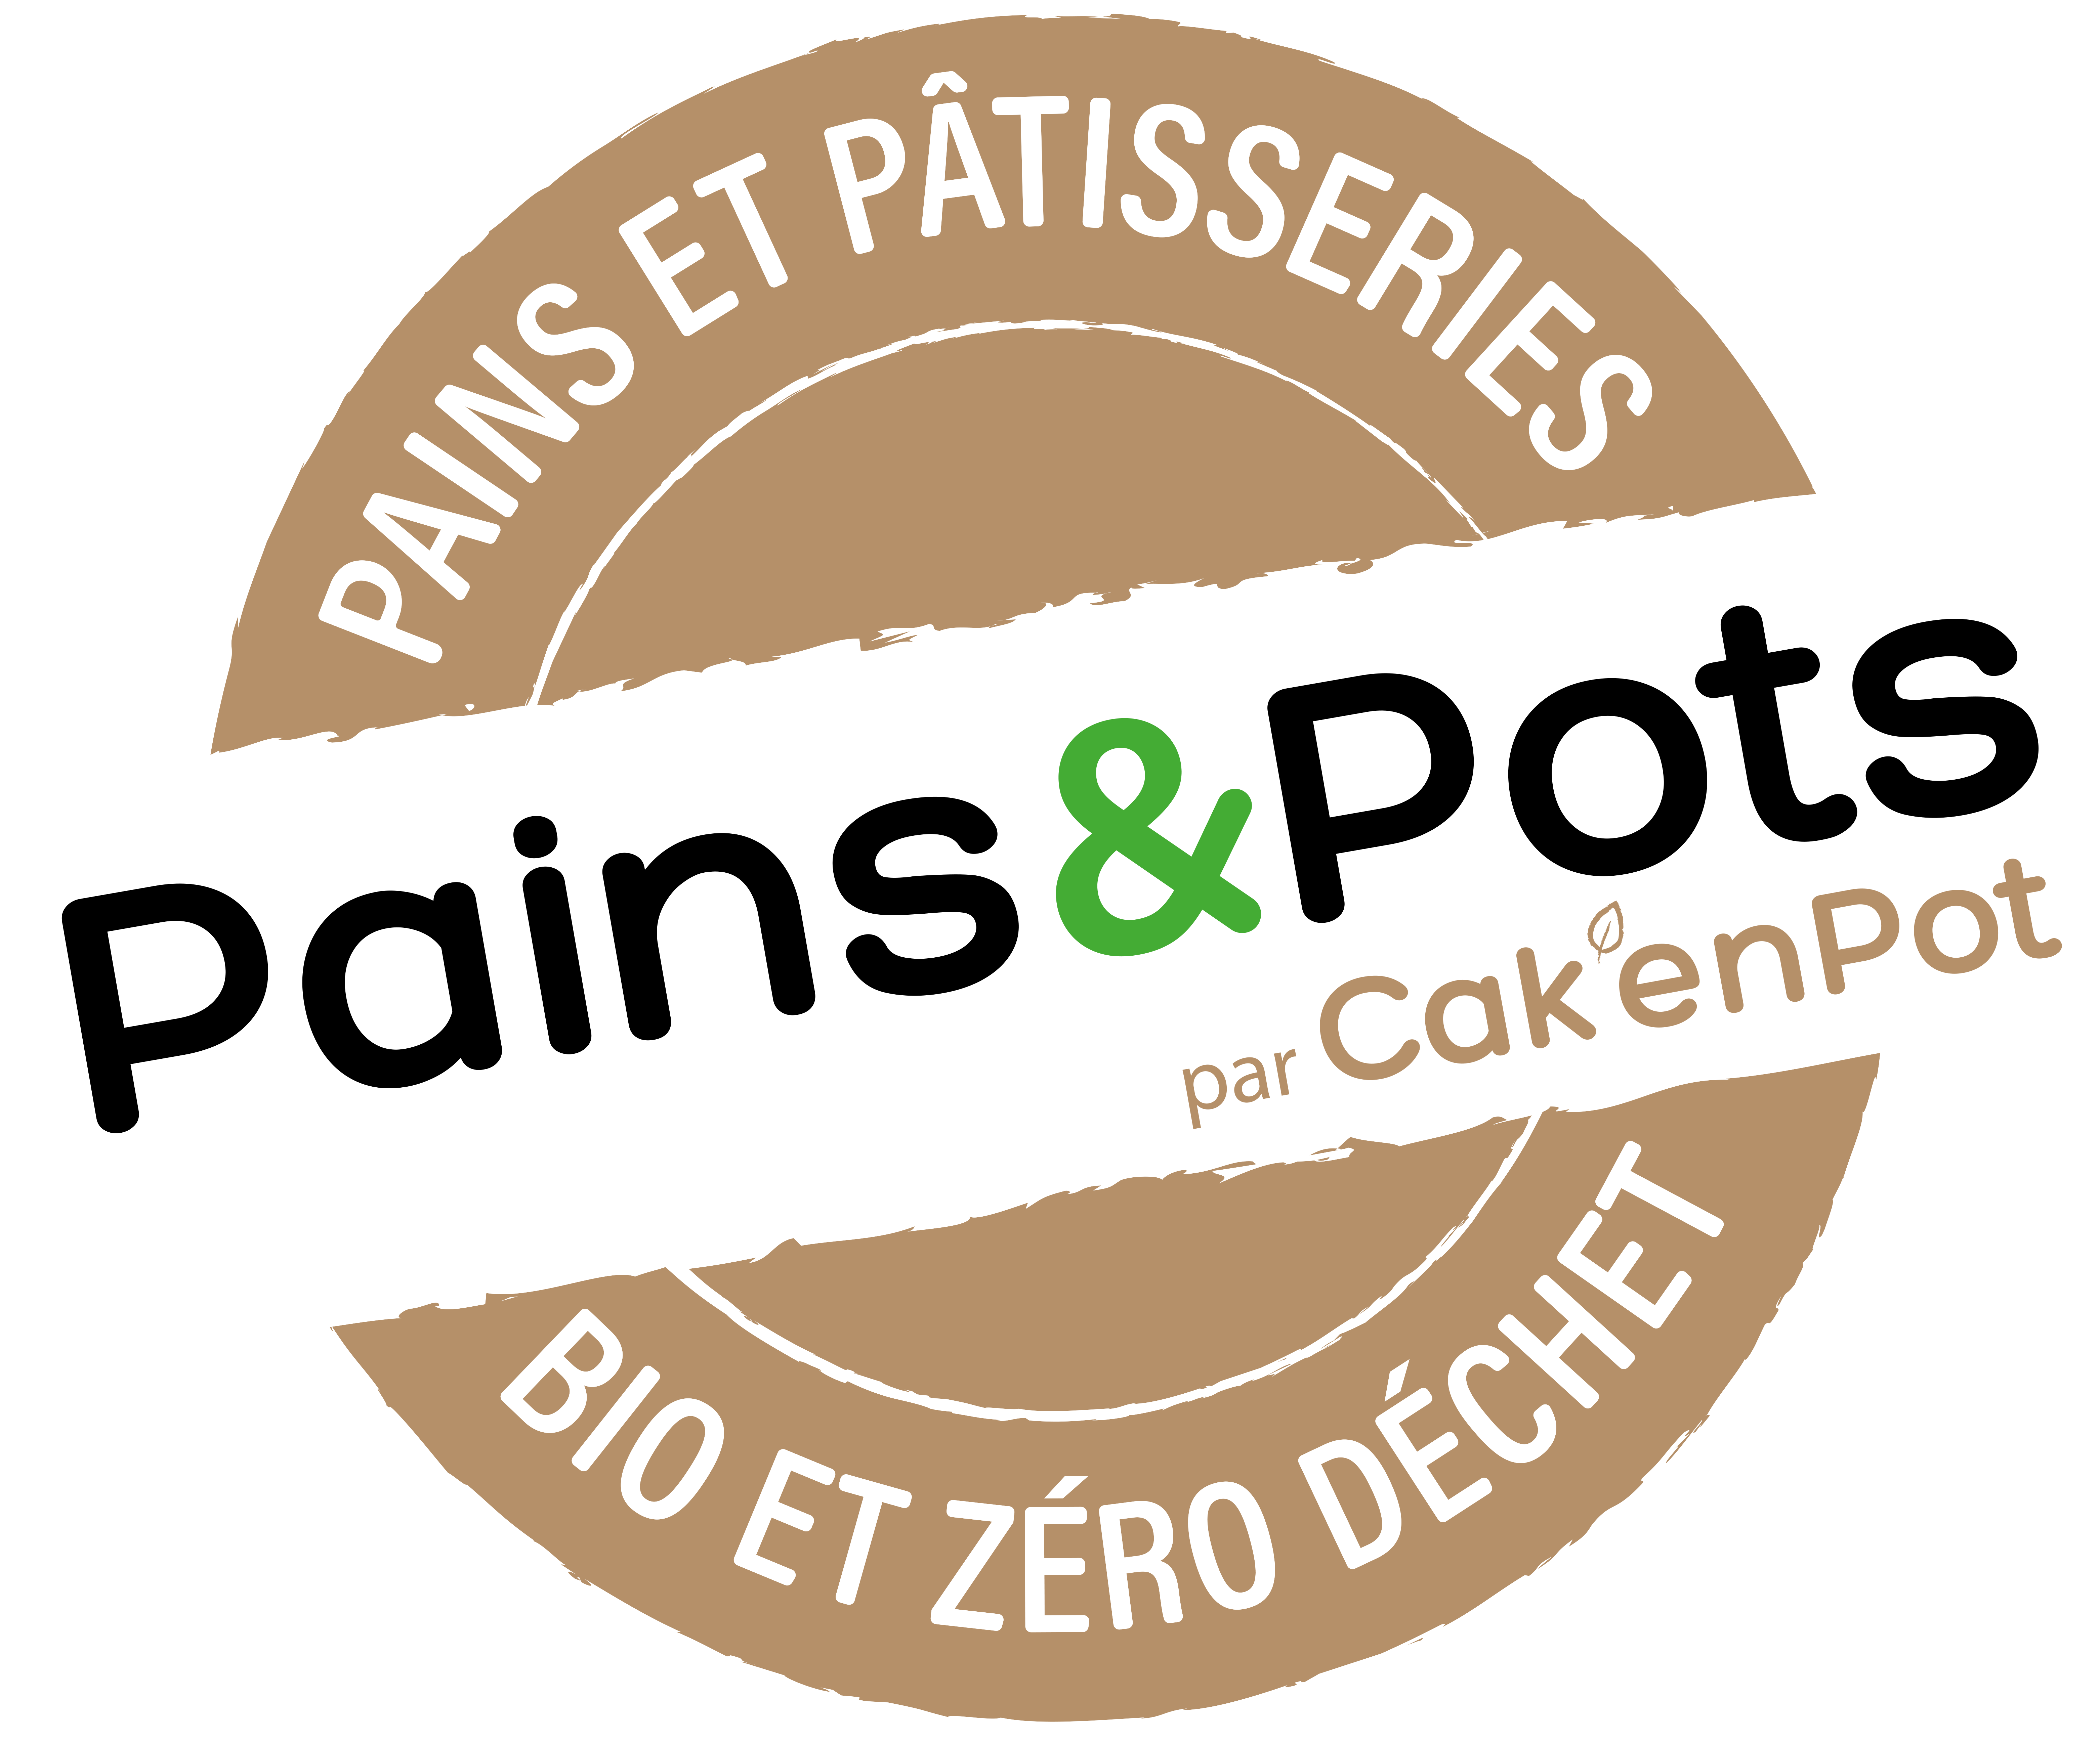 Pains & Pots - Cak'En Pot 4